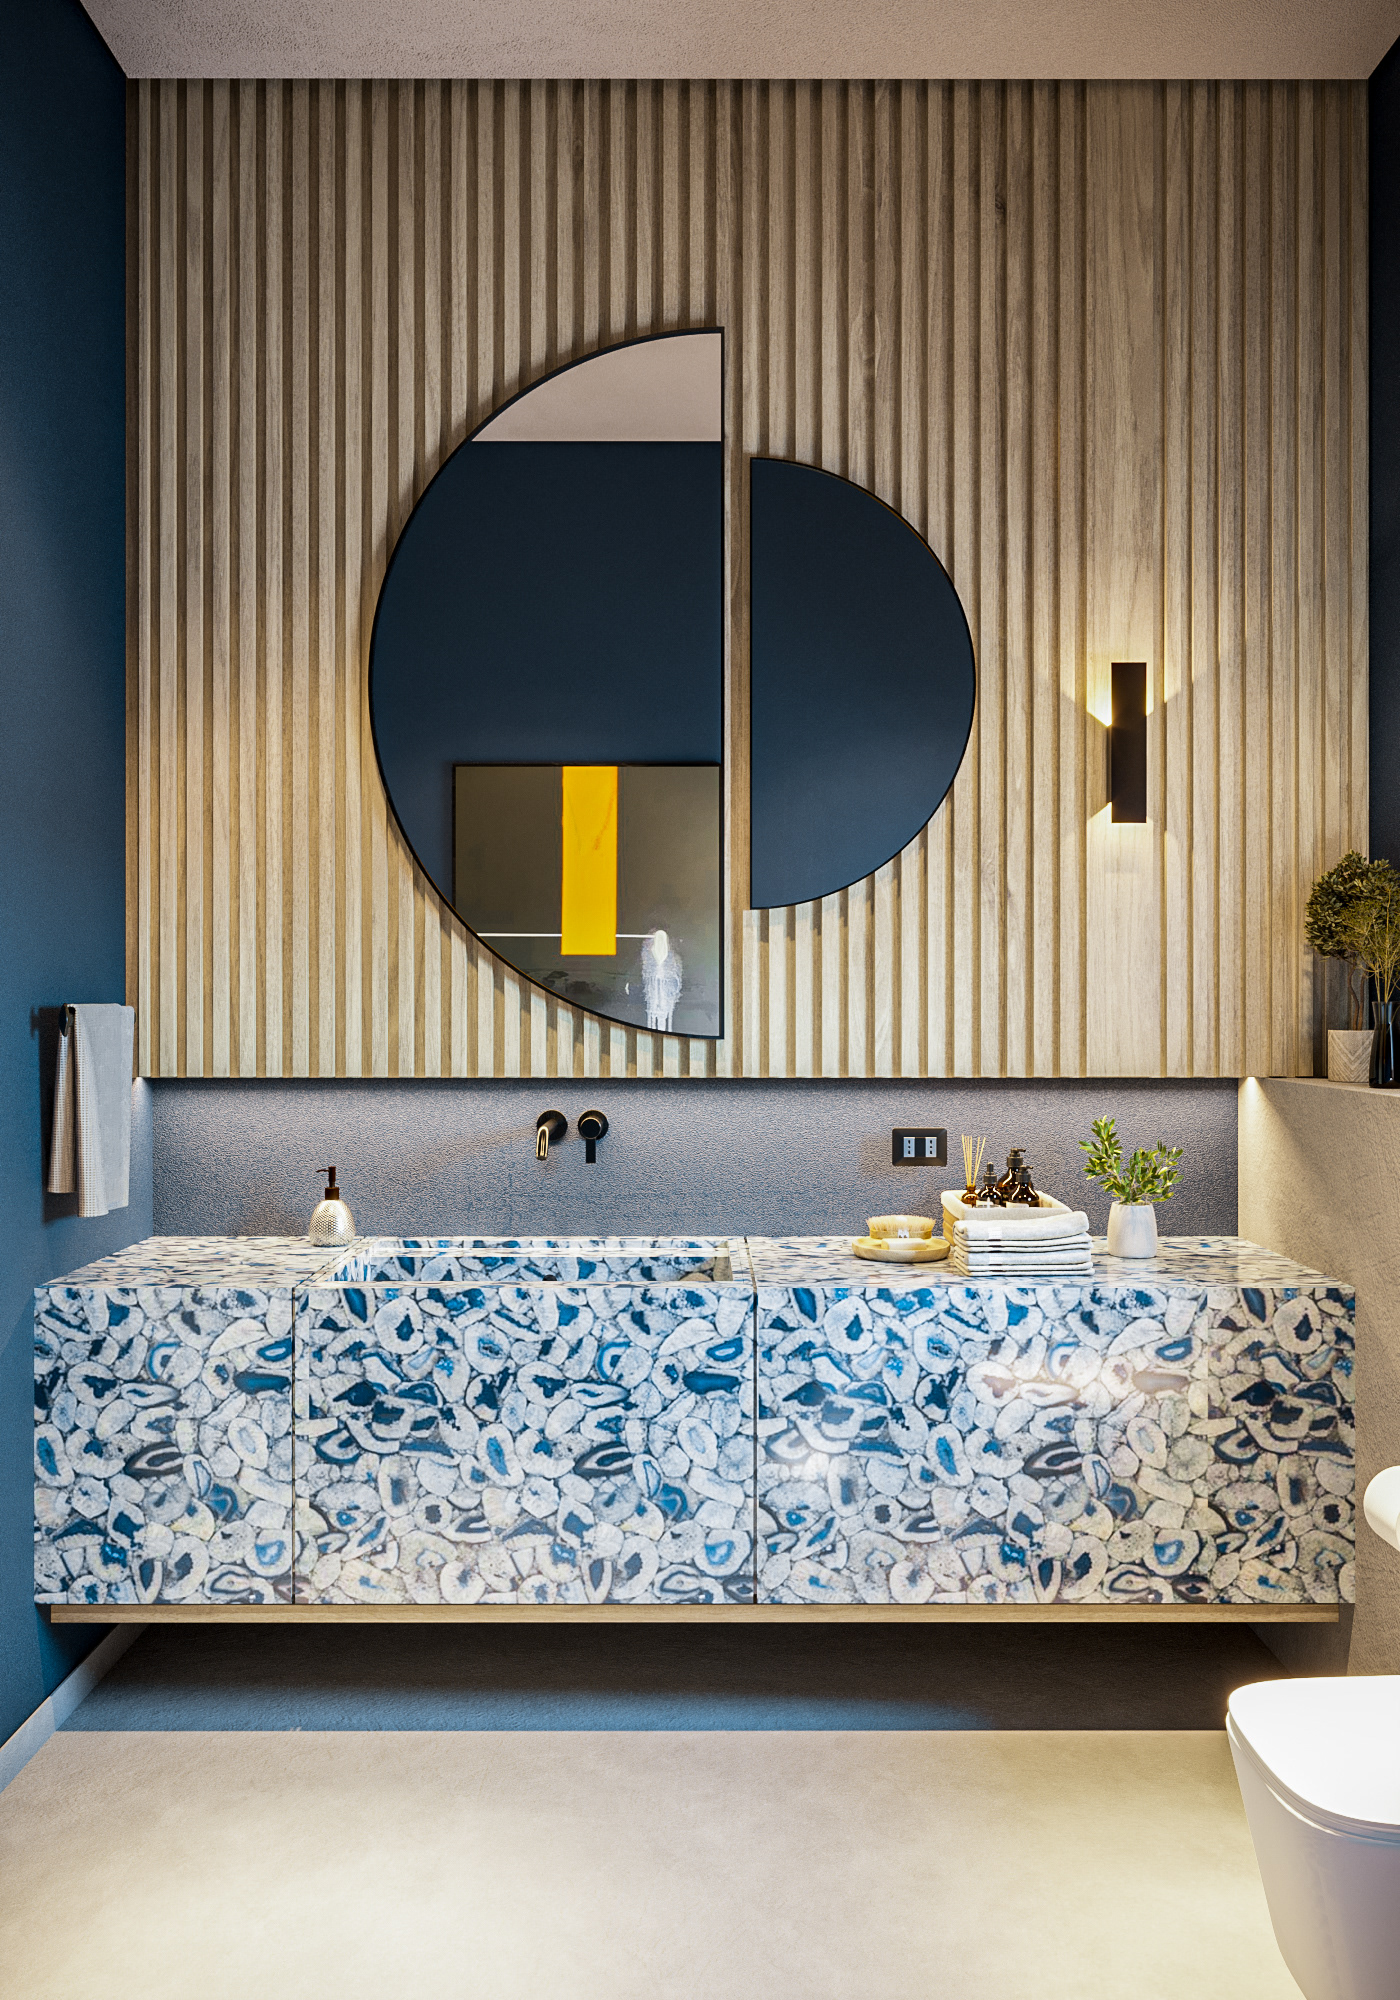 CGI architecture visualization Render interior design  blue corona bathroom